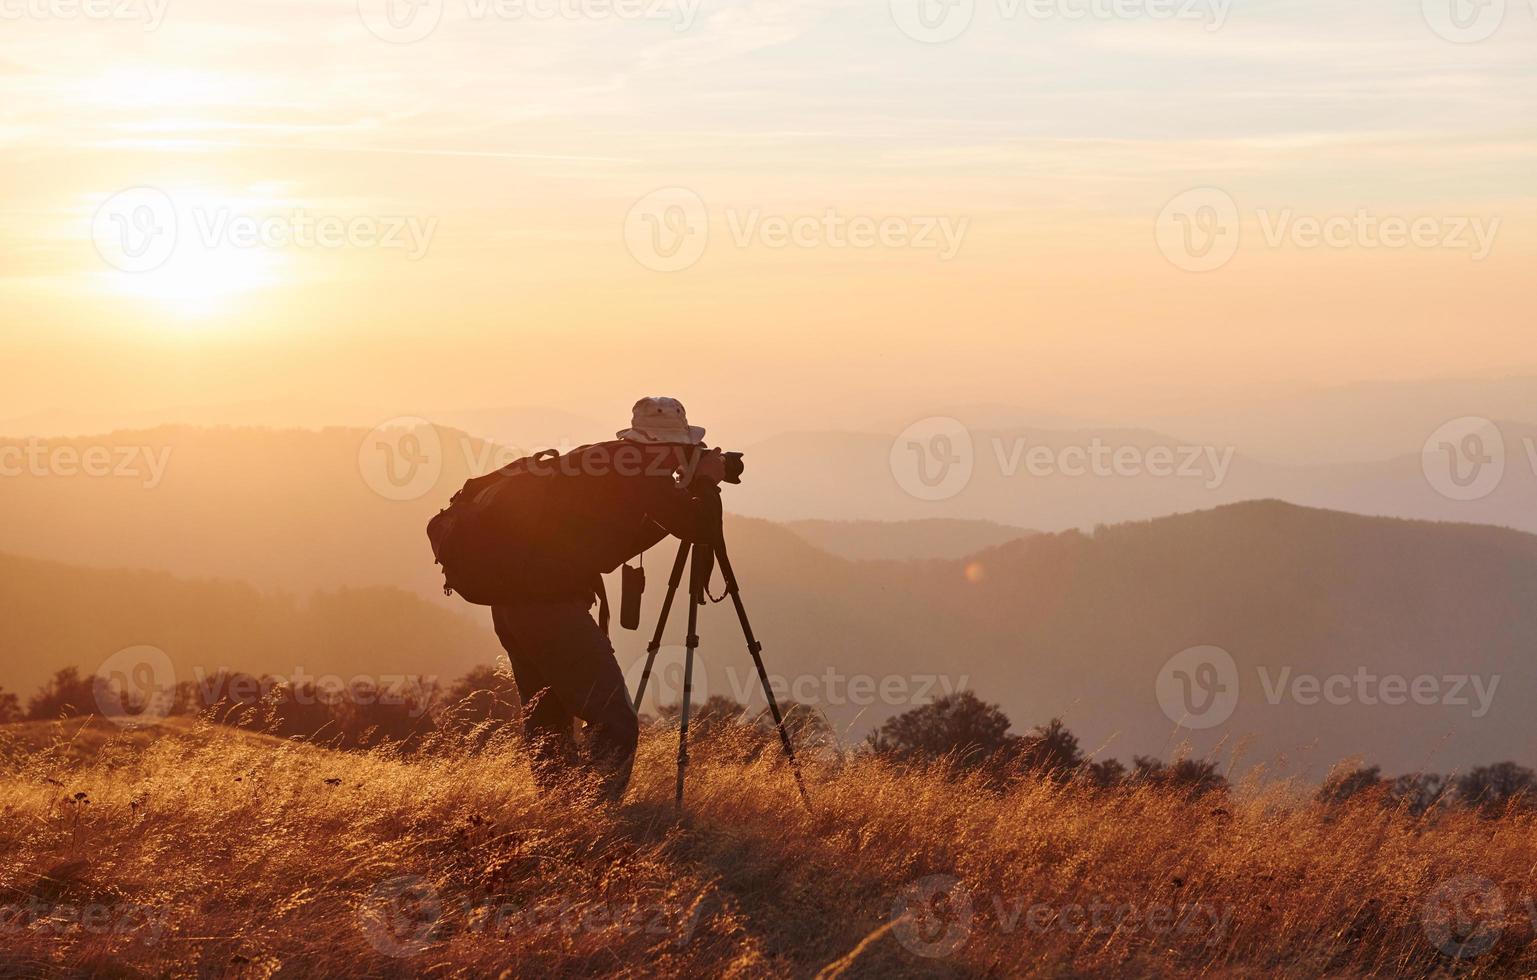 manlig fotograf stående och arbetssätt på majestätisk landskap av höst träd och bergen förbi de horisont foto